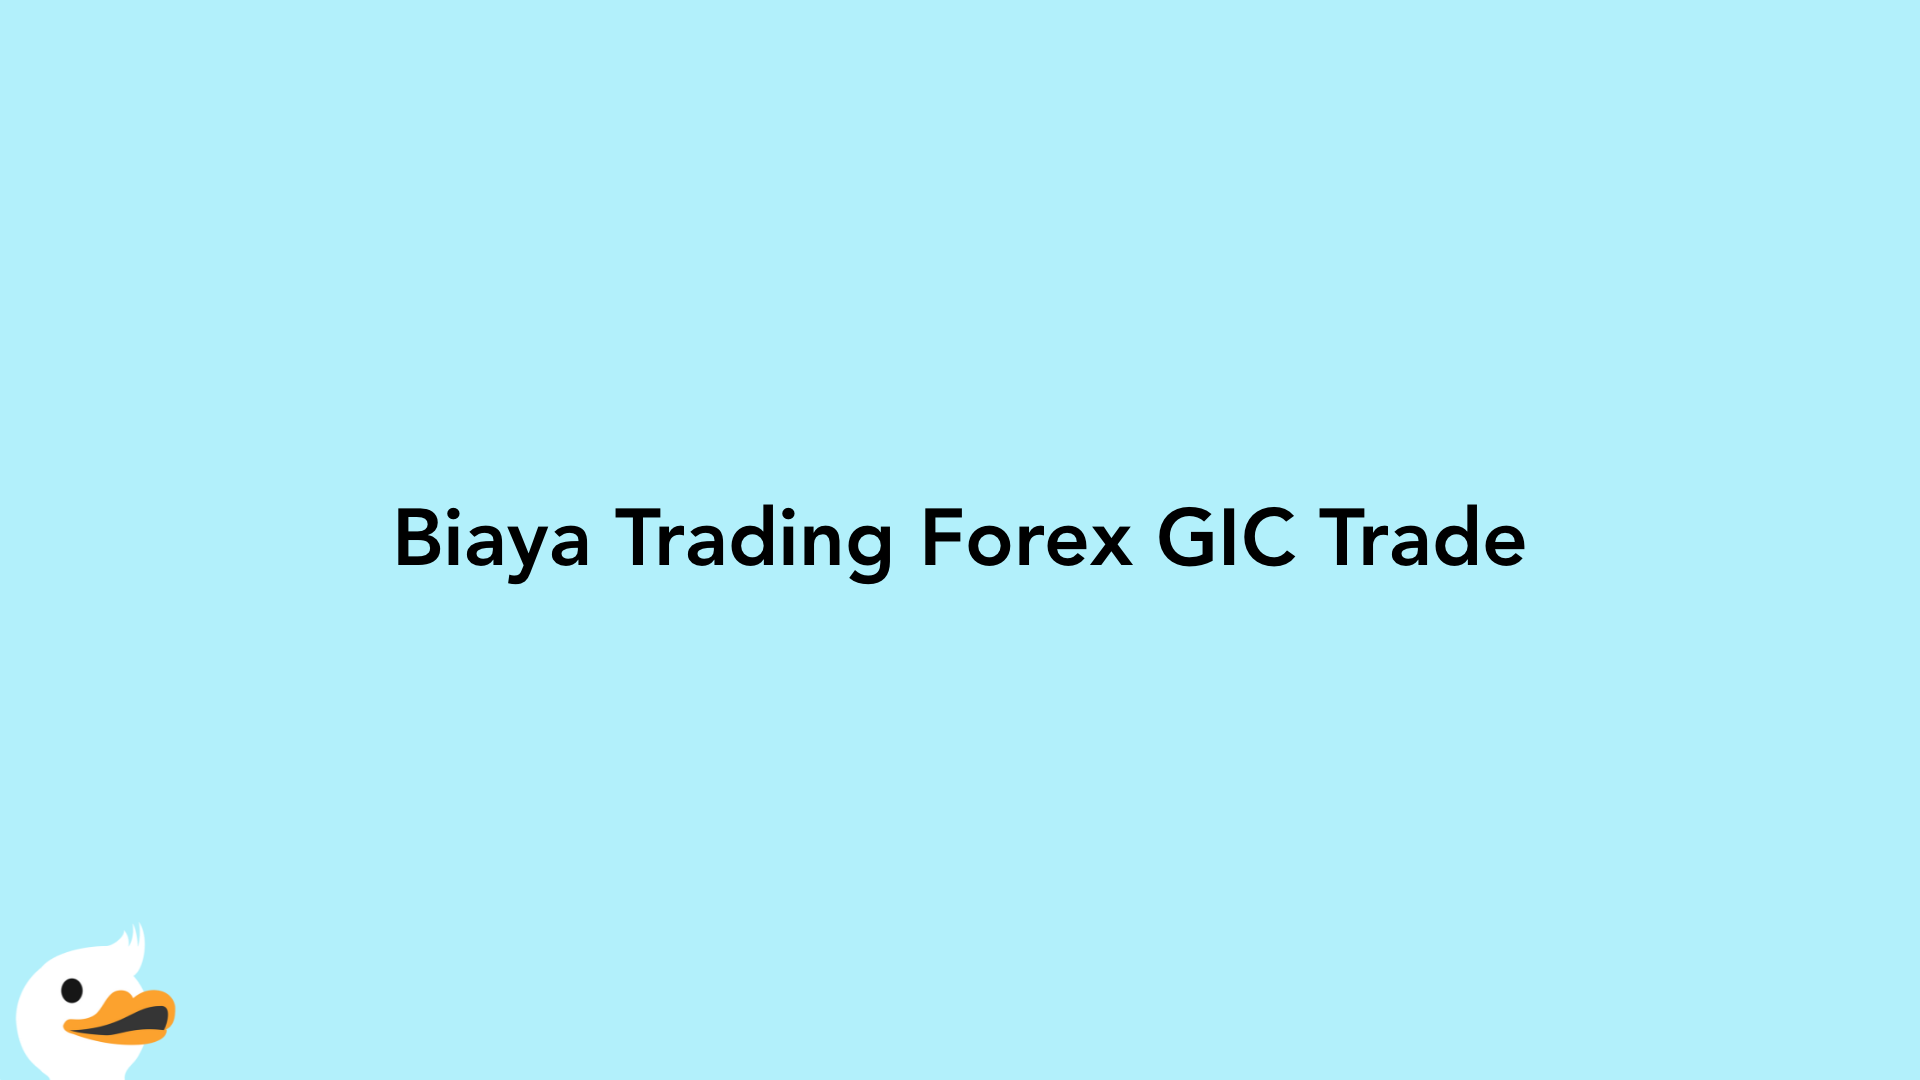 Biaya Trading Forex GIC Trade